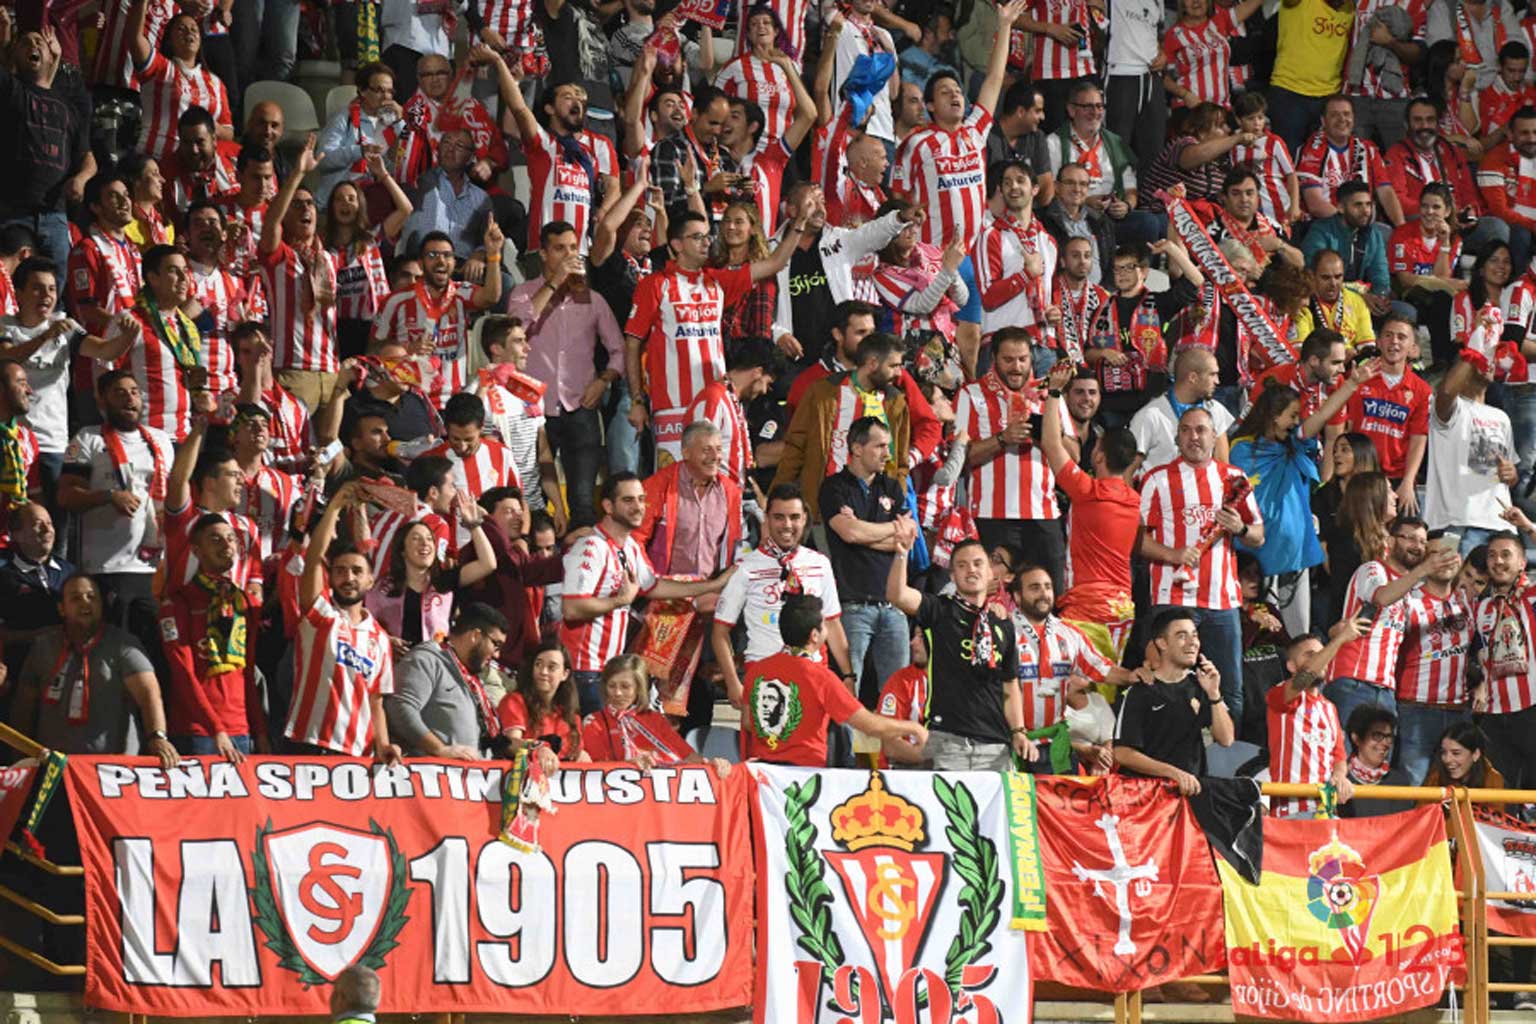 La Mareona se dará cita en Valladolid con más de 4.000 aficionados rojiblancos en las gradas Sporting1905